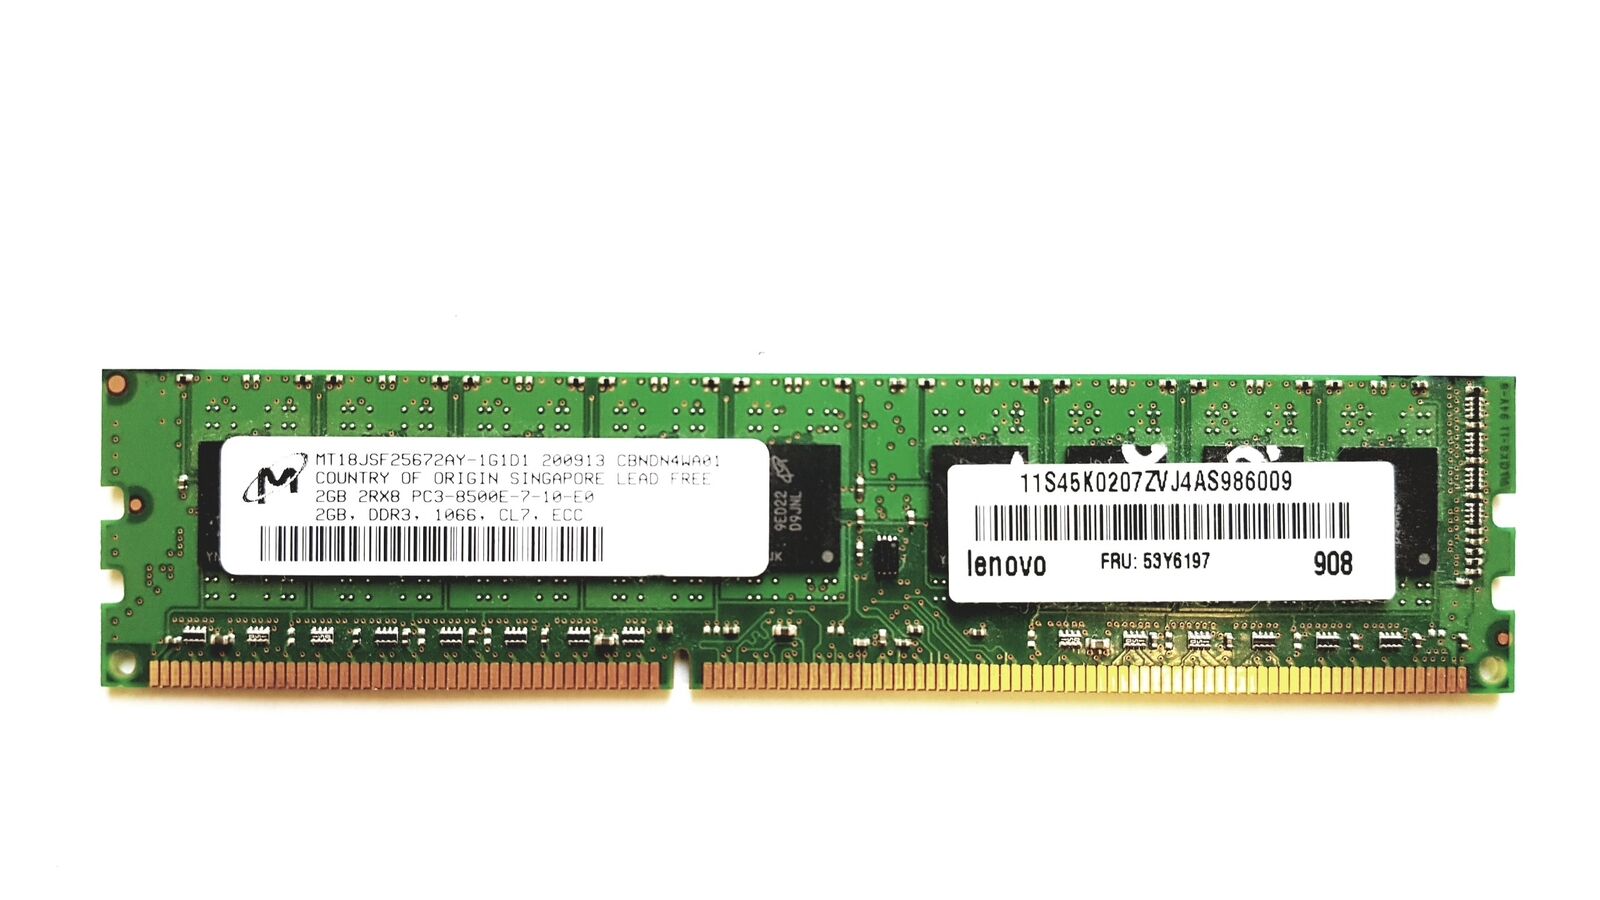 Micron 2GB 2RX8 PC3-8500E DDR3-1066MHz Memory MT18JSF25672AY-1G1D1